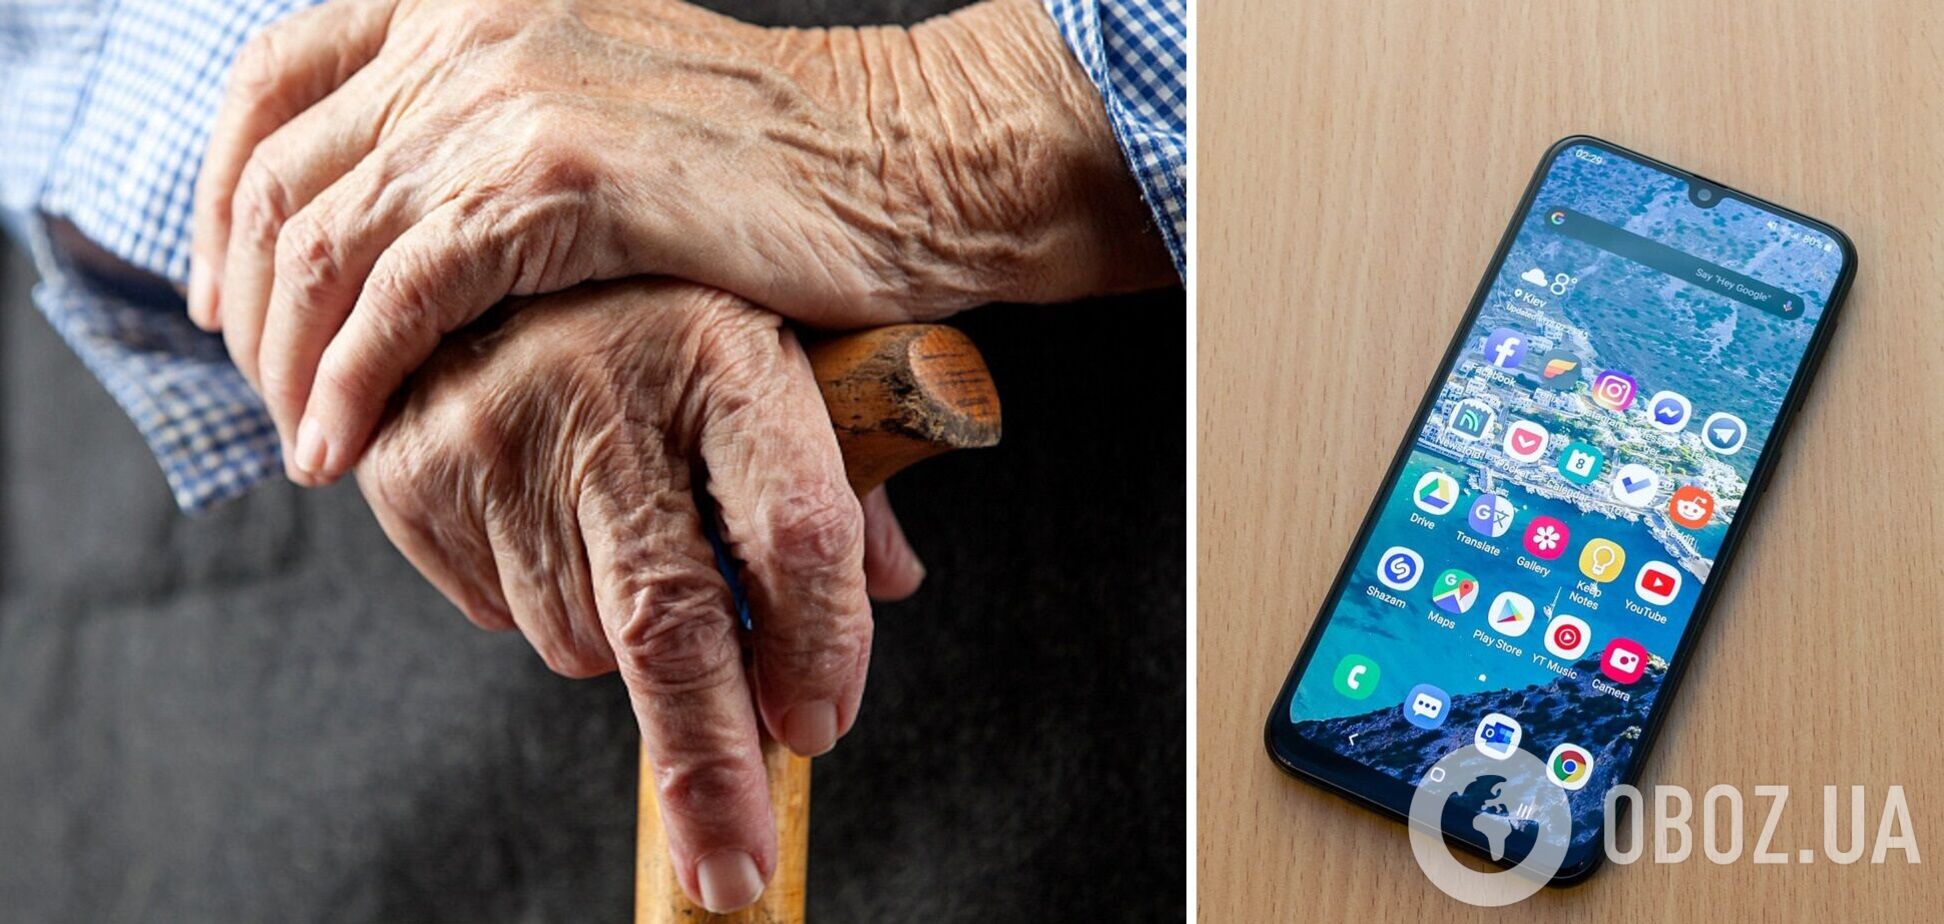 Стоимость смартфонов для пенсионеров будет серьезно отличаться от обычных